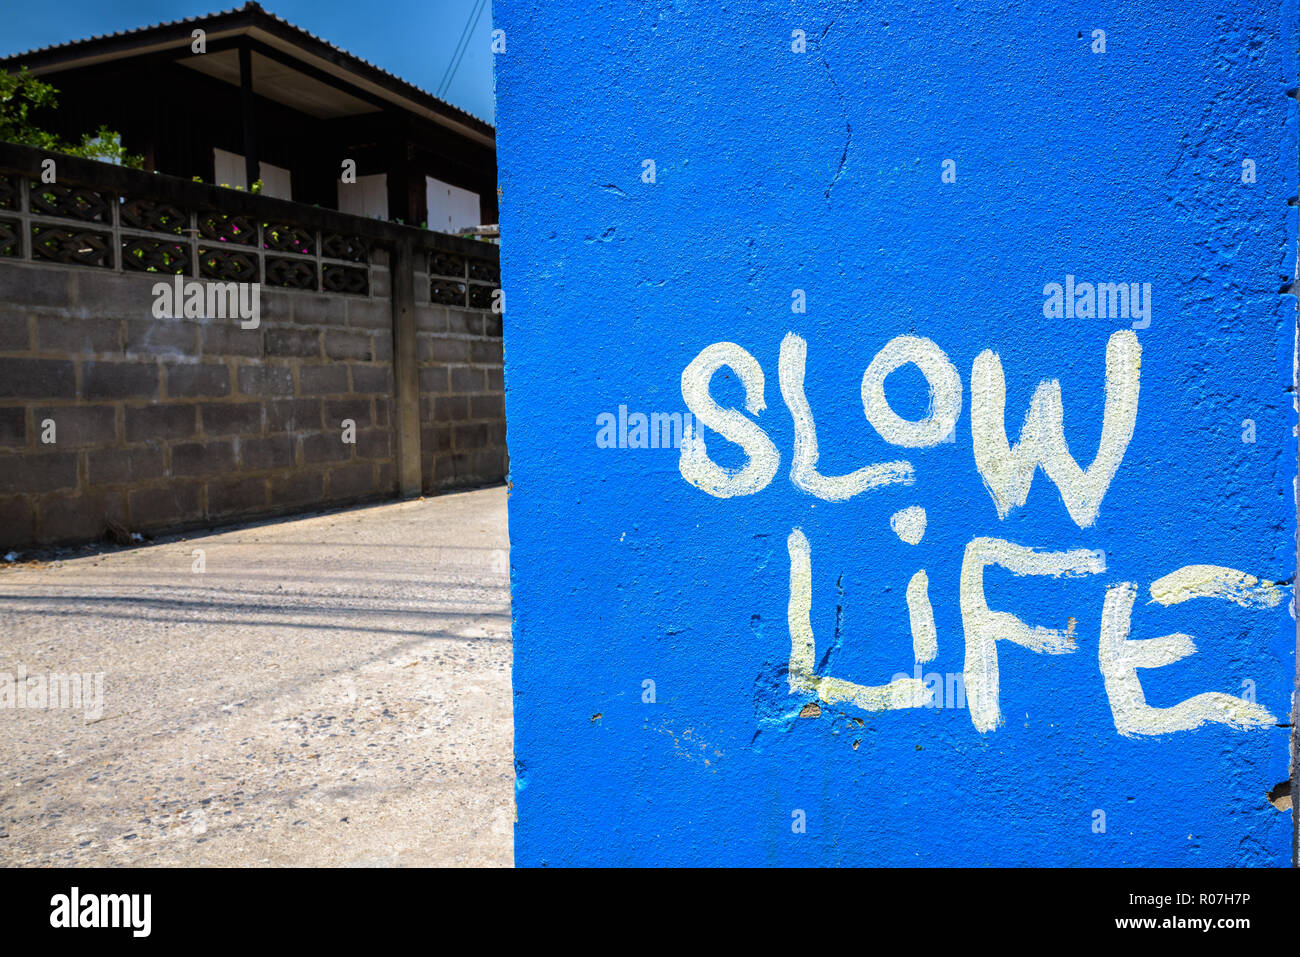 Peint bleu avec slow life texte écrit sur le mur Banque D'Images